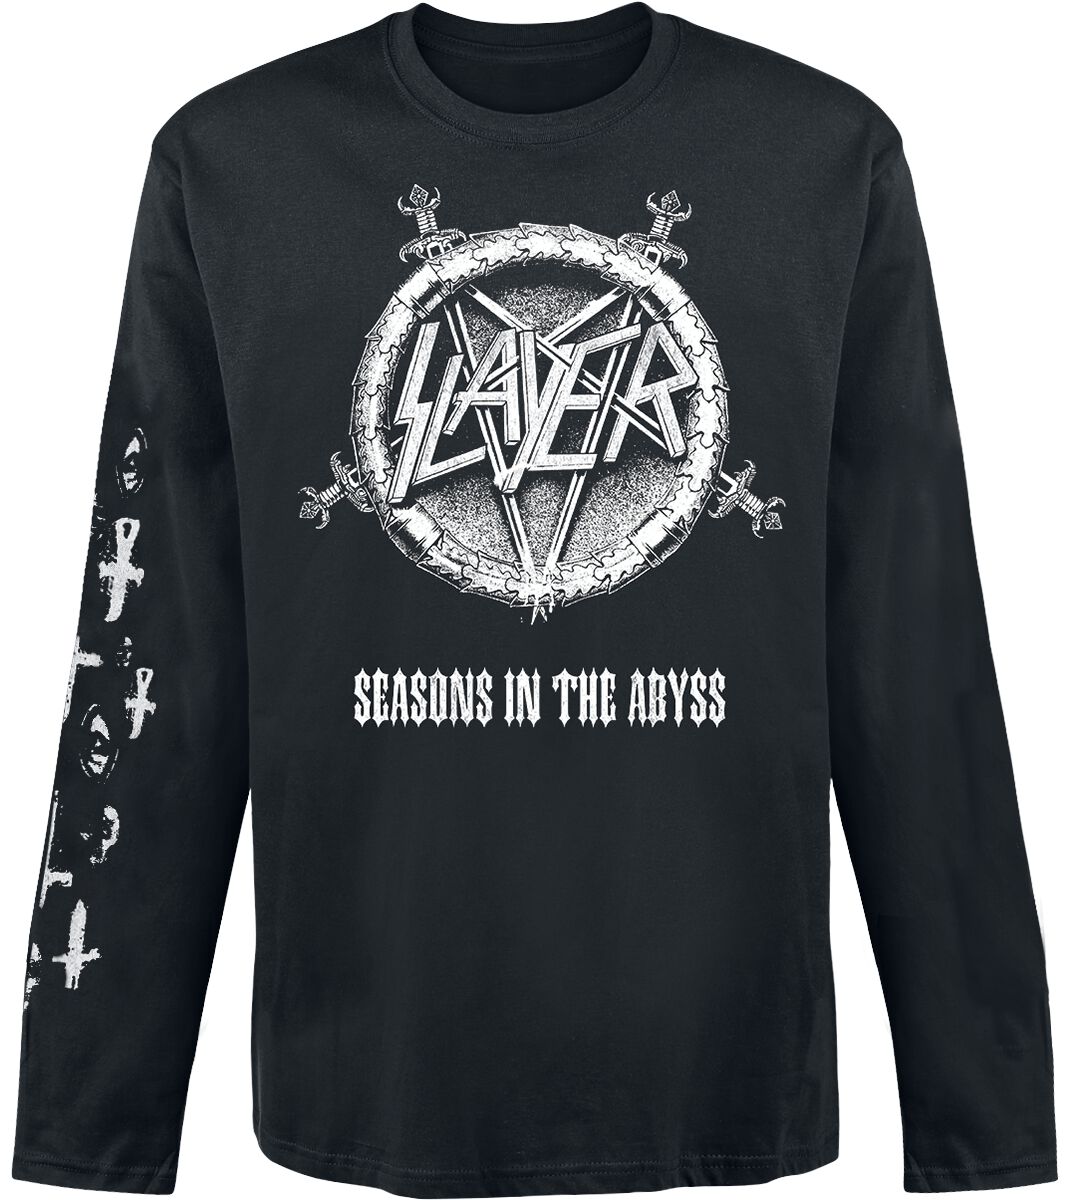 Slayer Langarmshirt - Seasons In The Abyss - S bis XXL - für Männer - Größe M - schwarz  - Lizenziertes Merchandise!